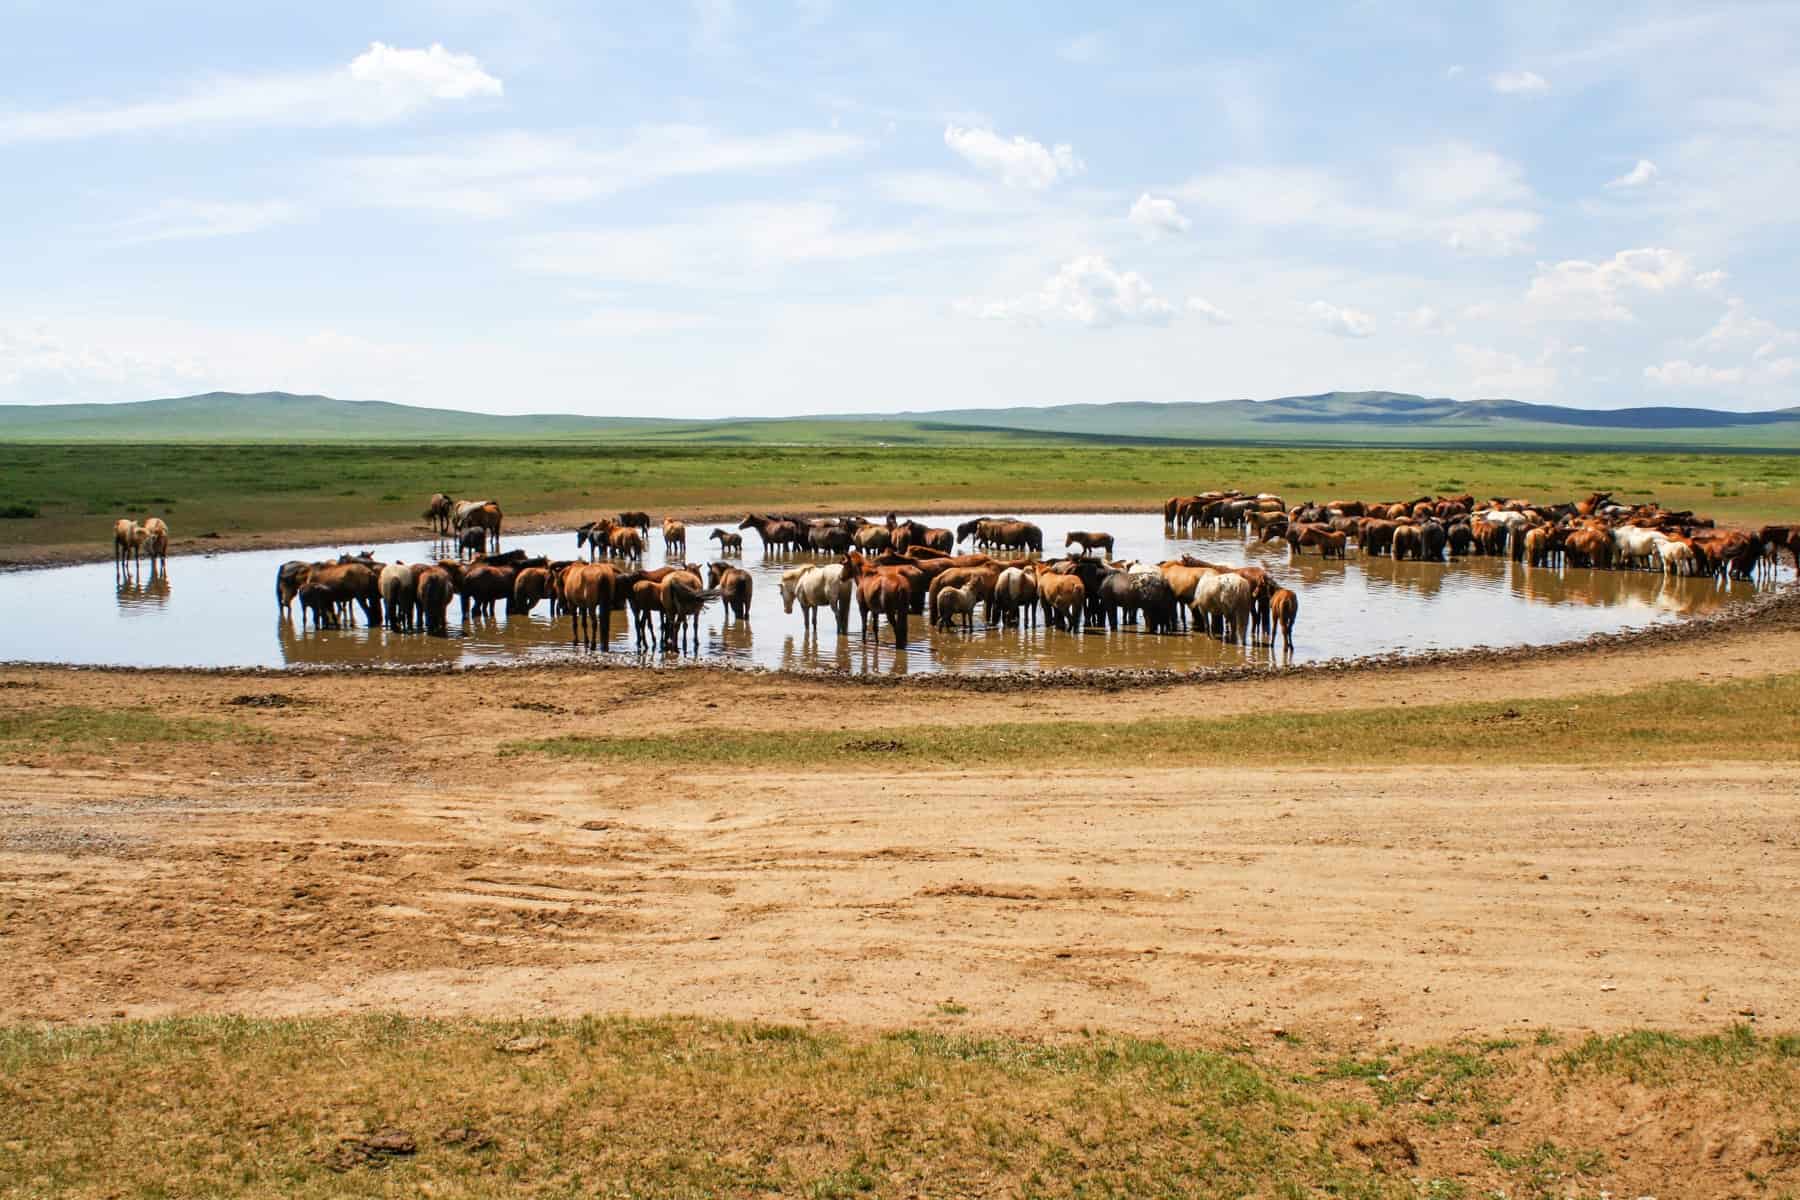 Caballos salvajes en el paisaje llano y árido de Mongolia bebiendo de un pequeño charco de agua